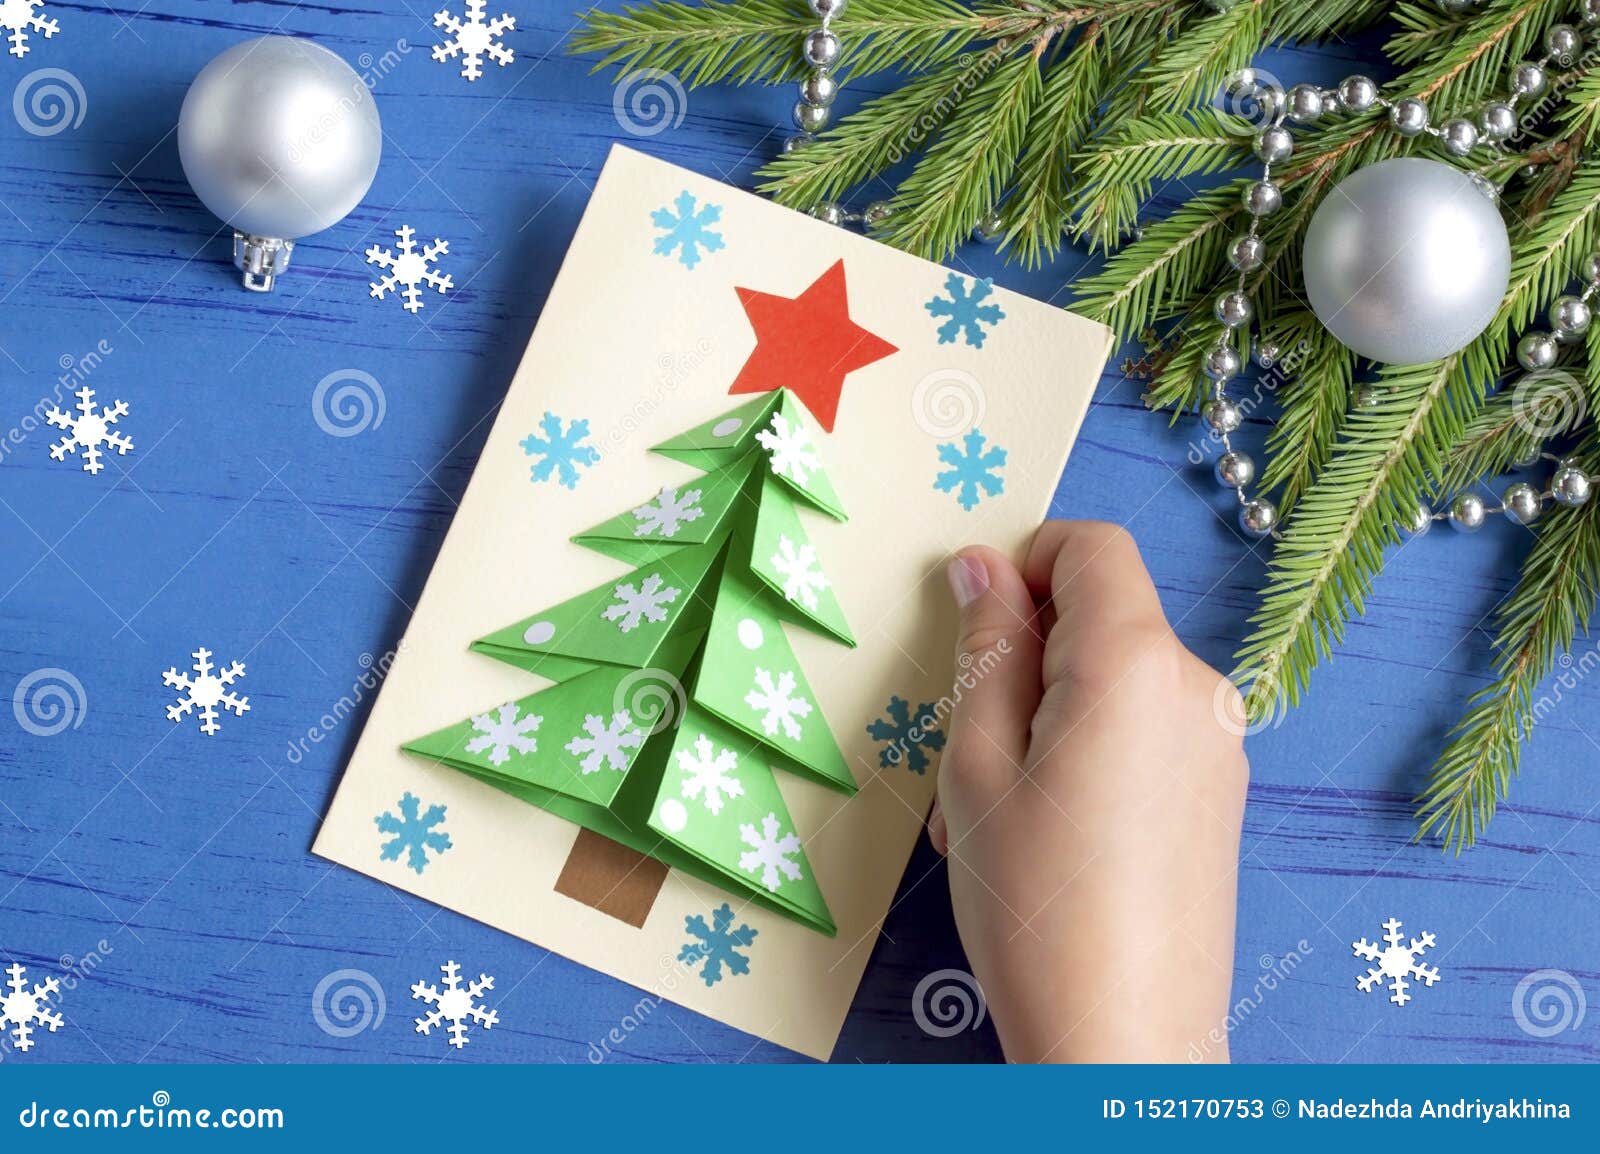 圣诞贺卡立体贺卡 3D圣诞树立体卡片 创意圣诞节小卡片批发商务-阿里巴巴